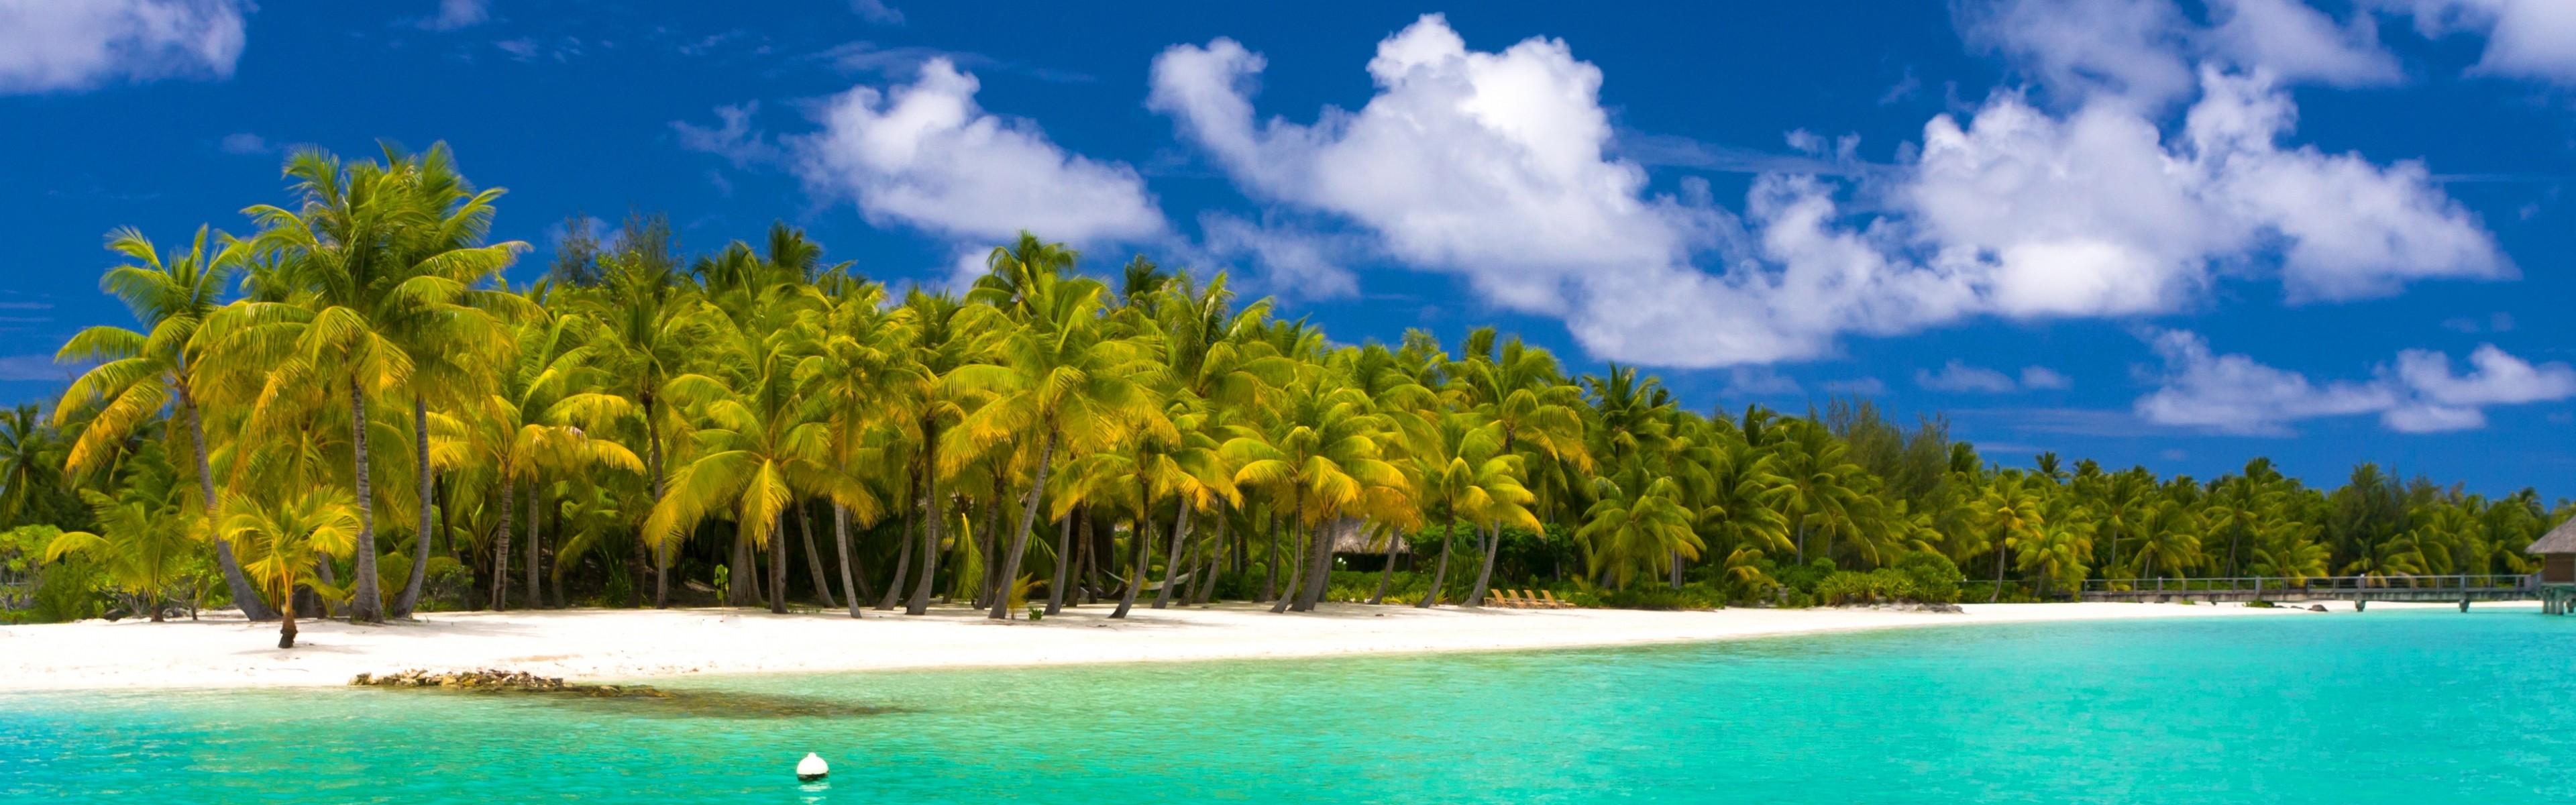 3840x1200 Preview wallpaper summer, maldives, tropical, beach, palm trees 